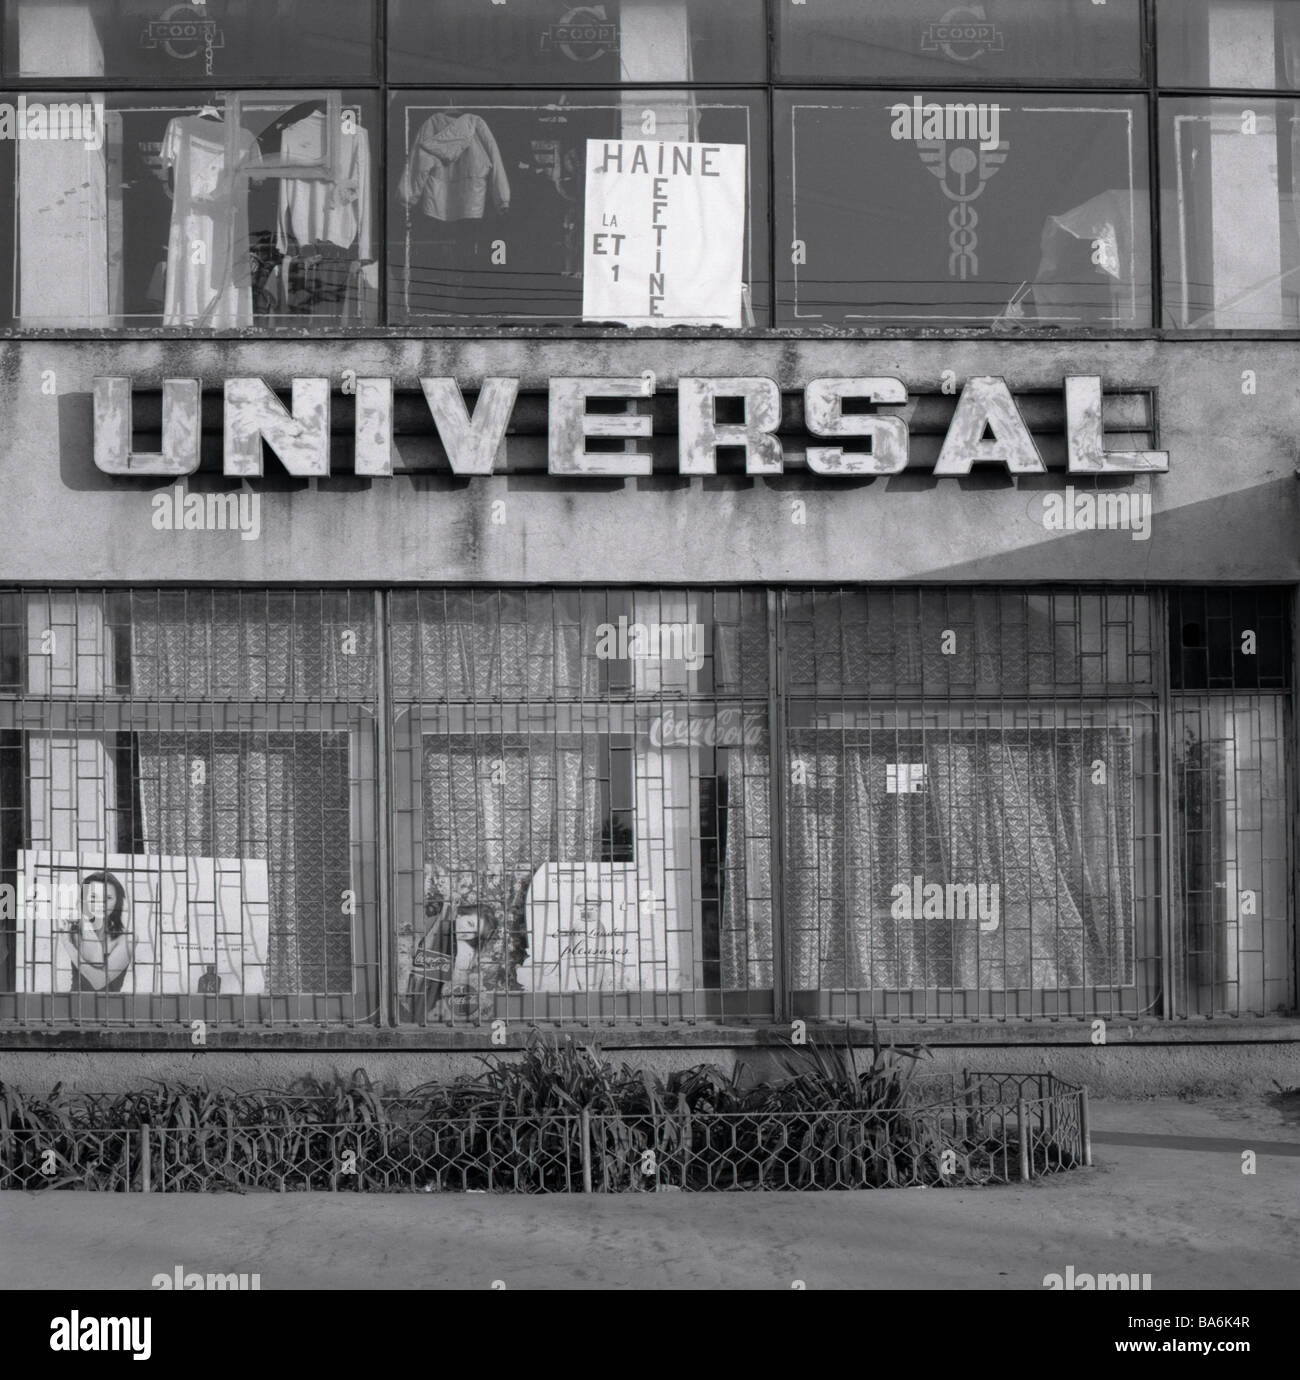 Roumanie Ciacovar détails façade magasin s/w Europe Balkans economie business architecture bâtiments stroke universal Banque D'Images